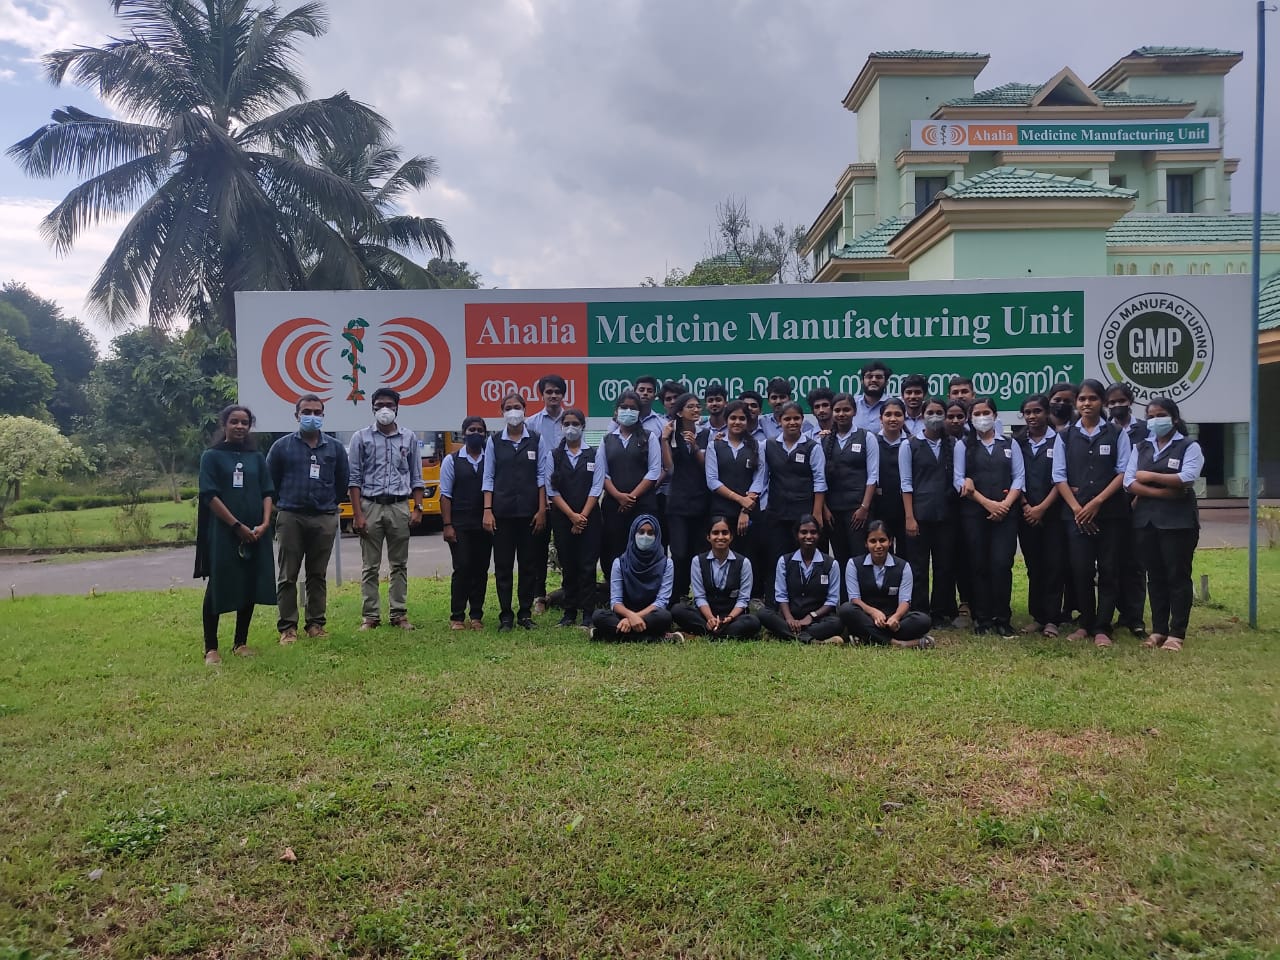 IV to Ahalia Medicine Manufacturing Unit